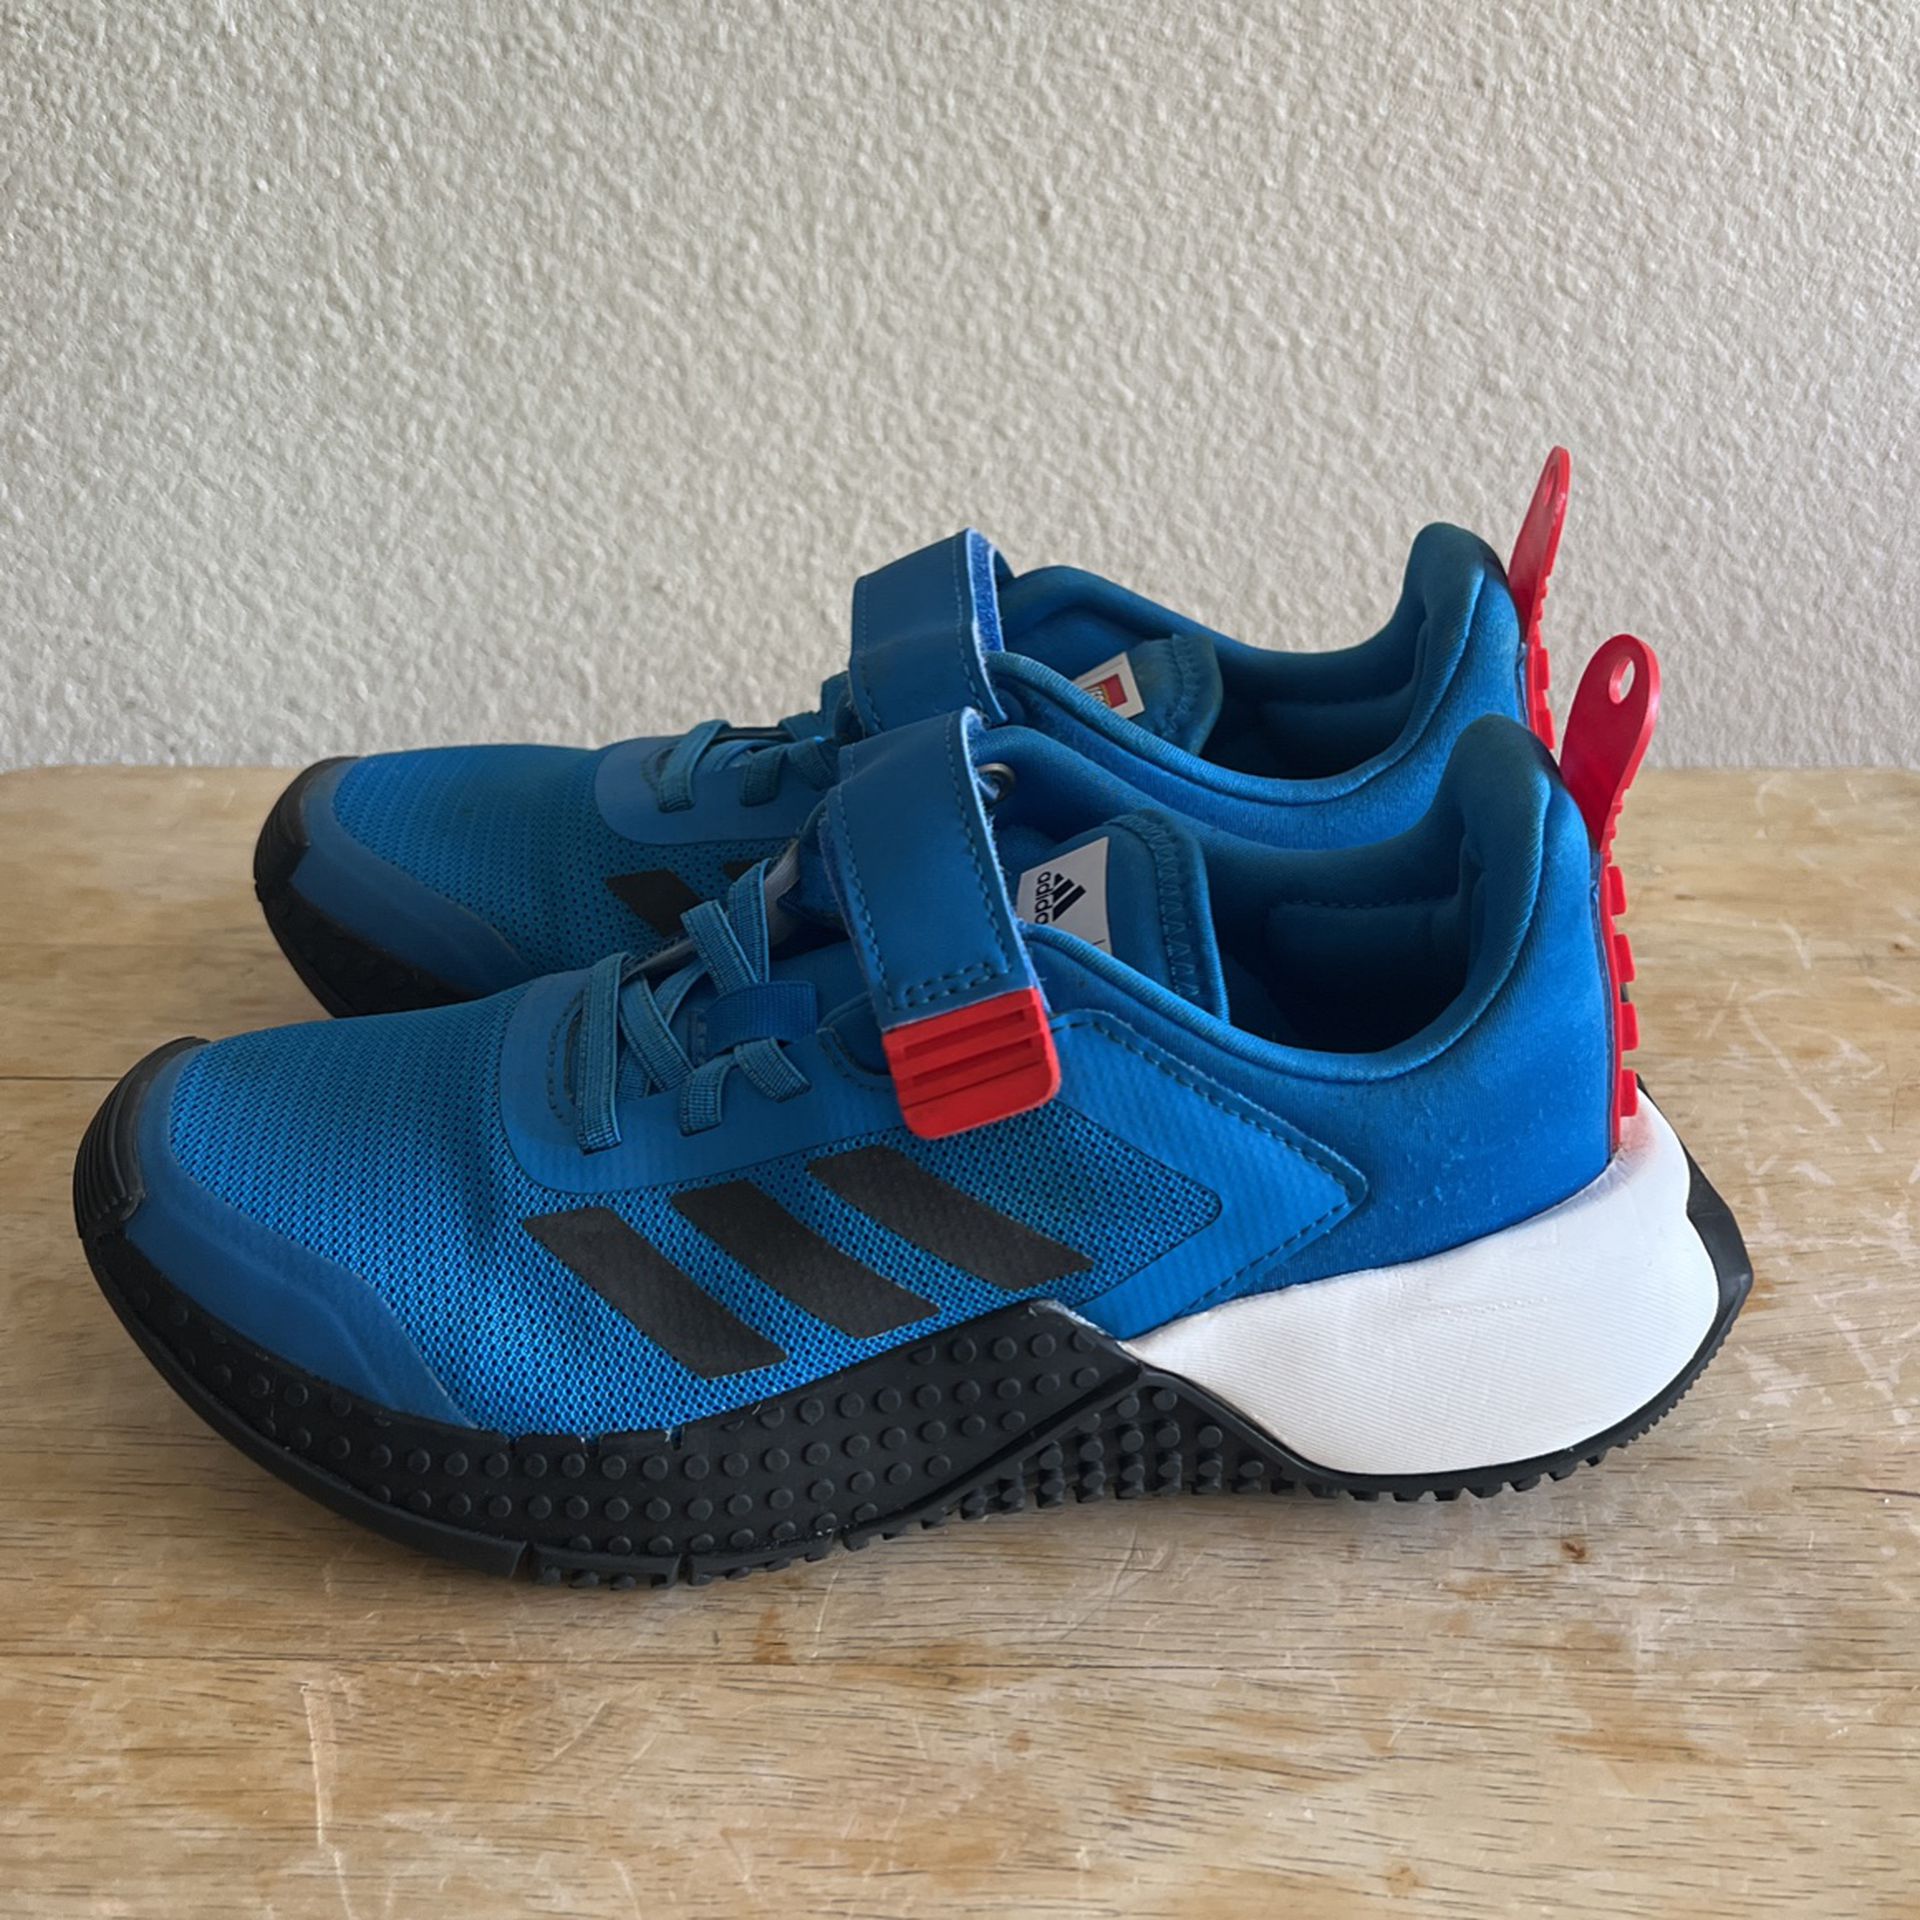 Adidas Lego Shoes 